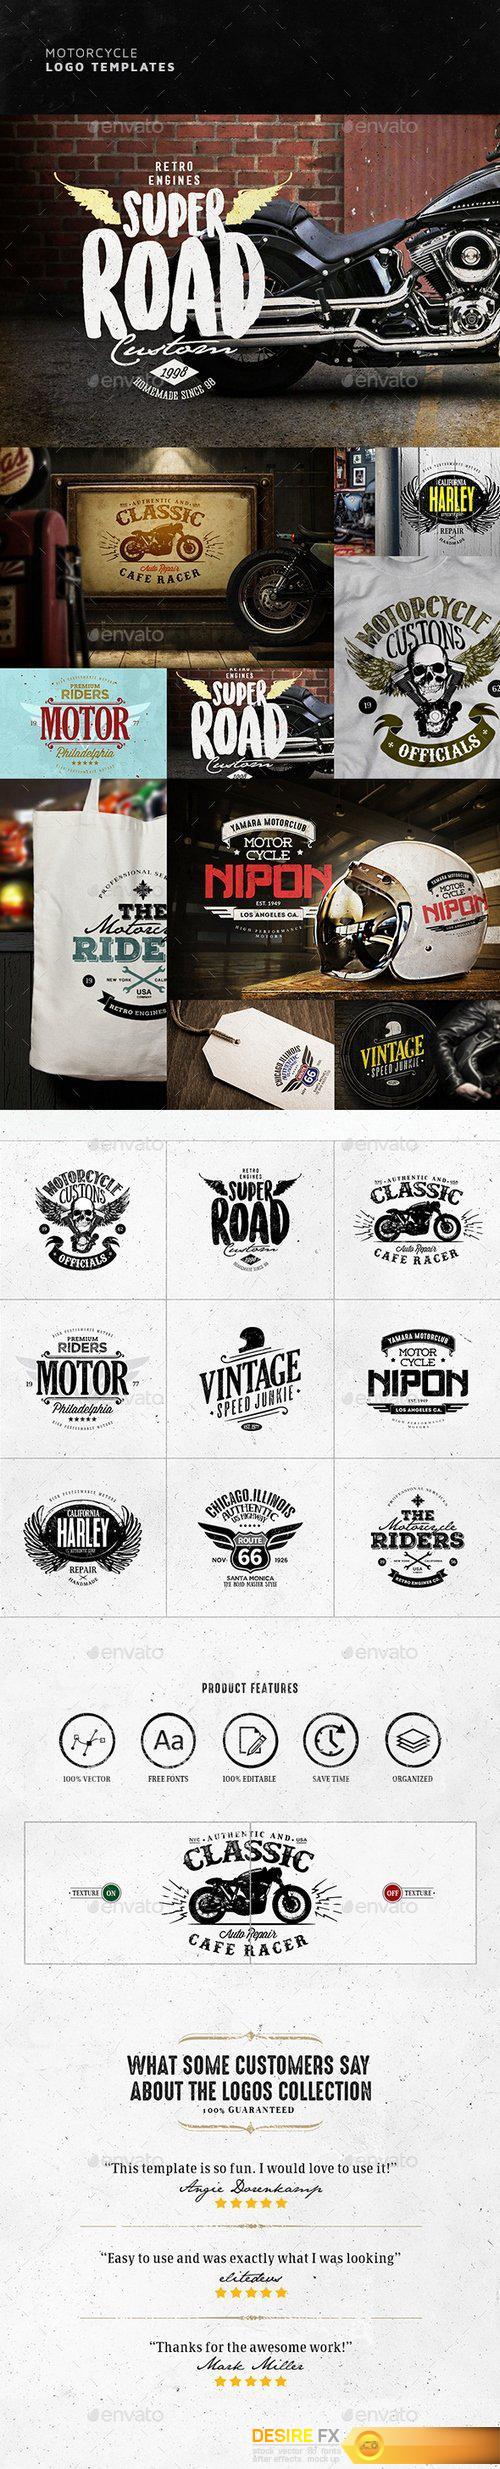 Graphicriver - Vintage Motorcycle Logo Design 20153446